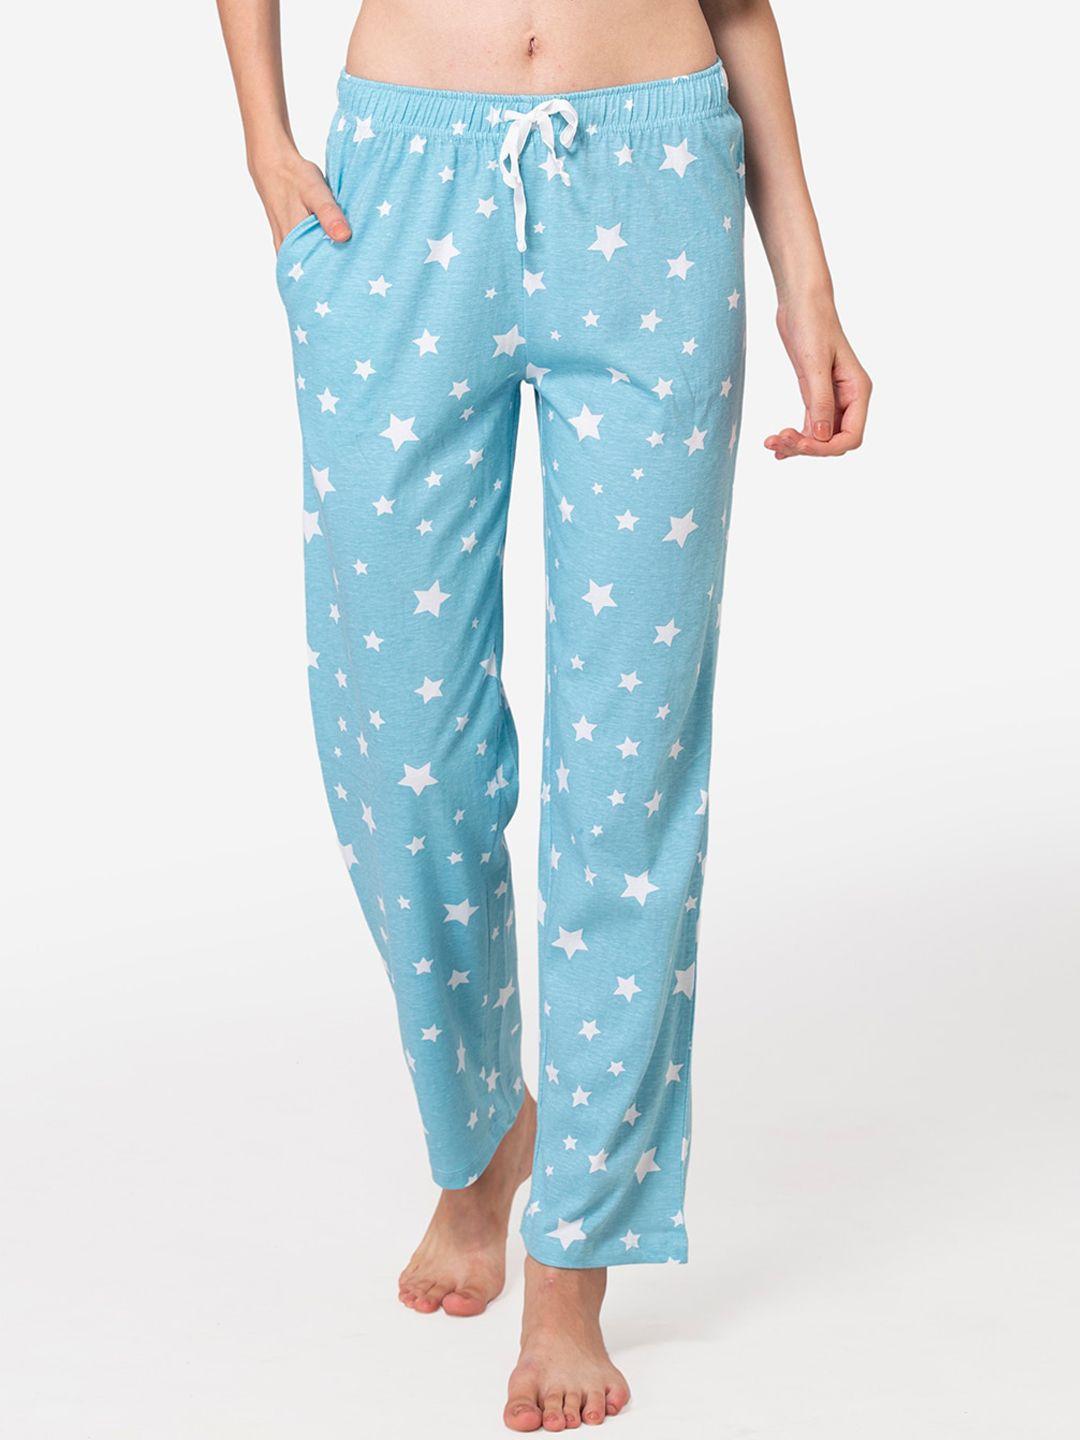 lounge dreams blue printed cotton pyjamas